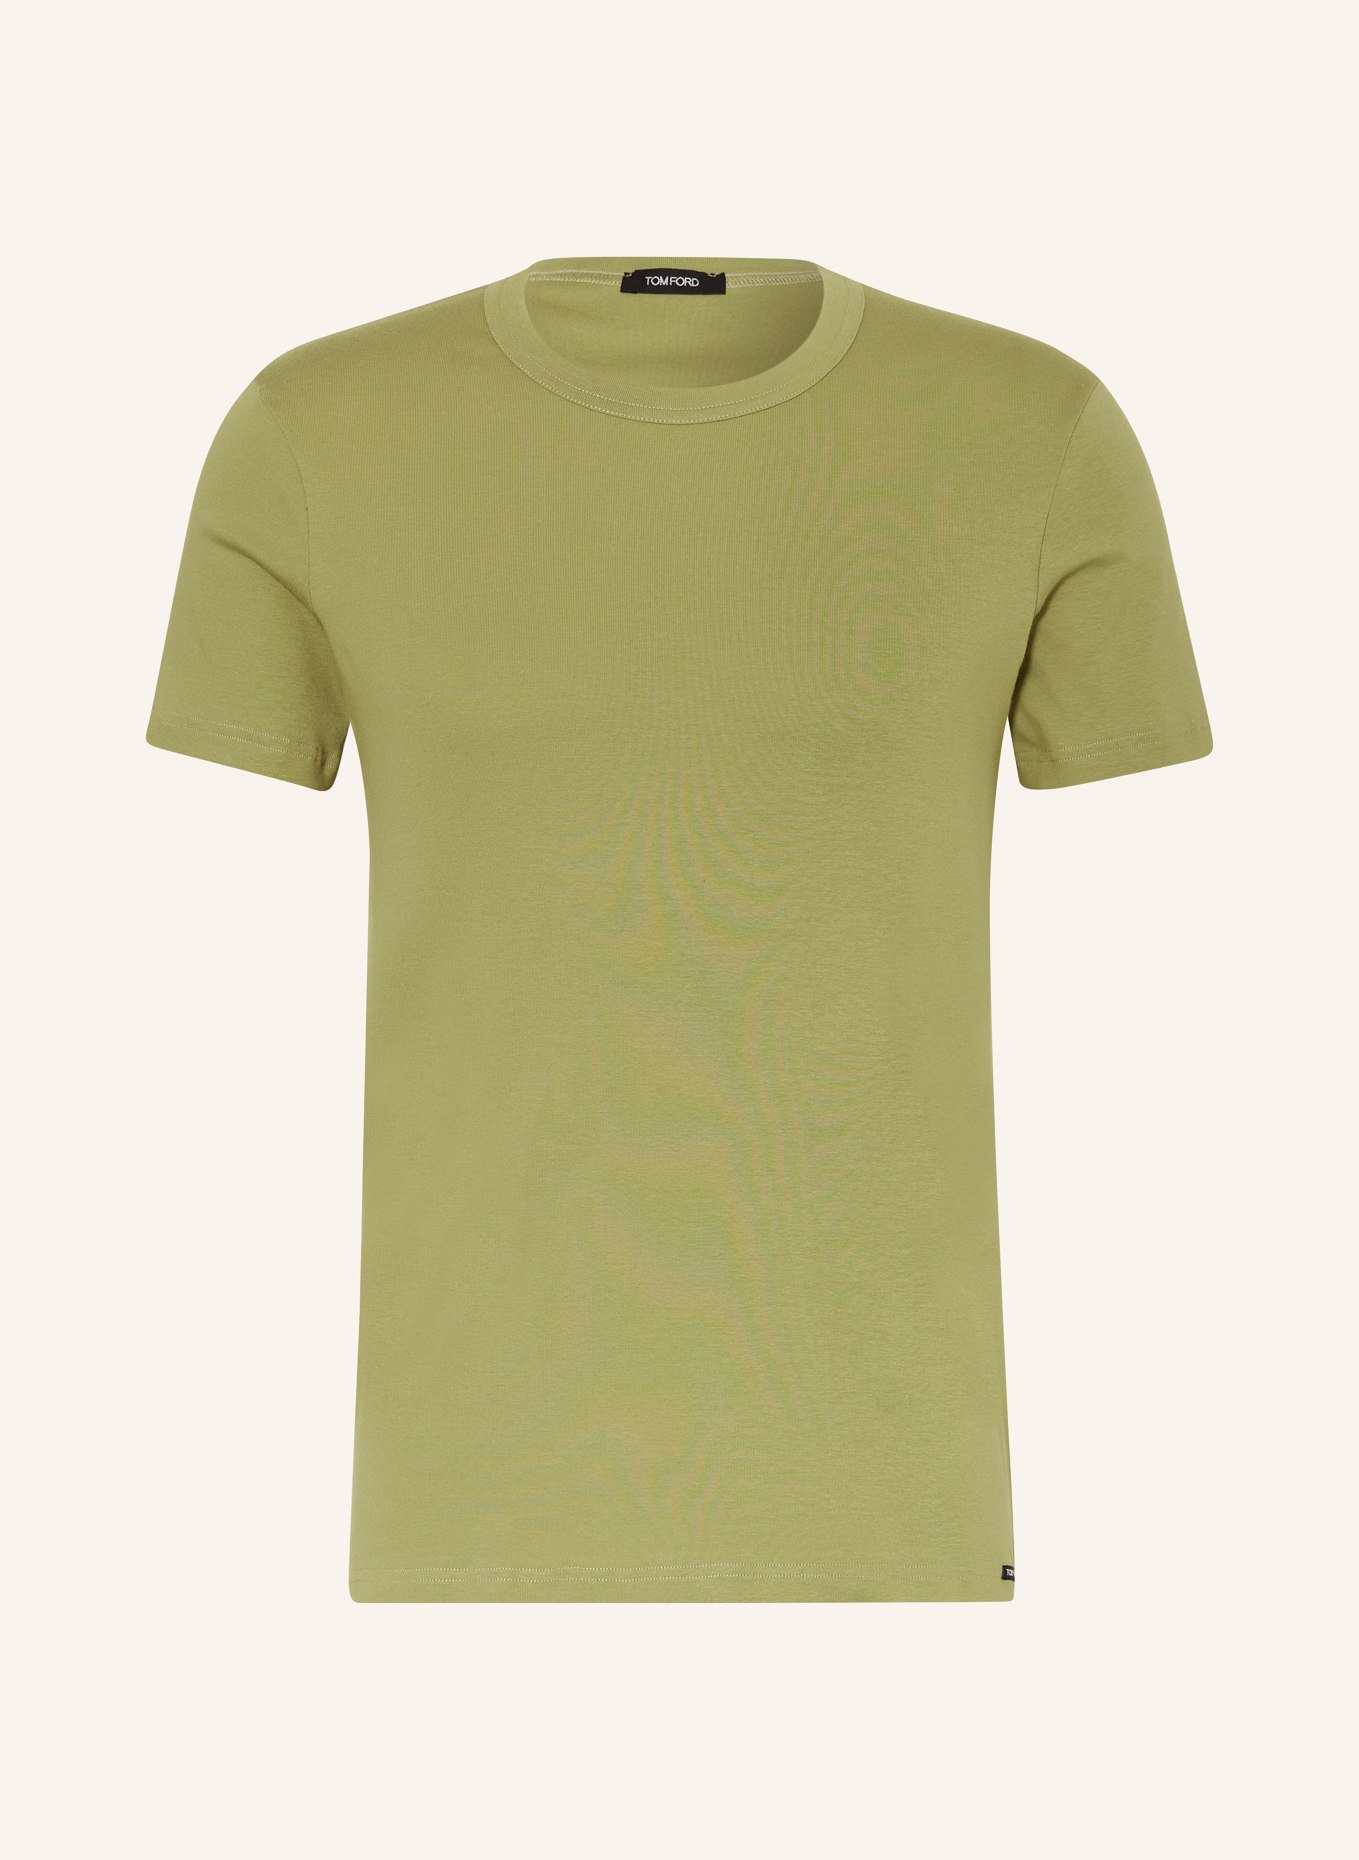 TOM FORD T-shirt, Color: OLIVE (Image 1)